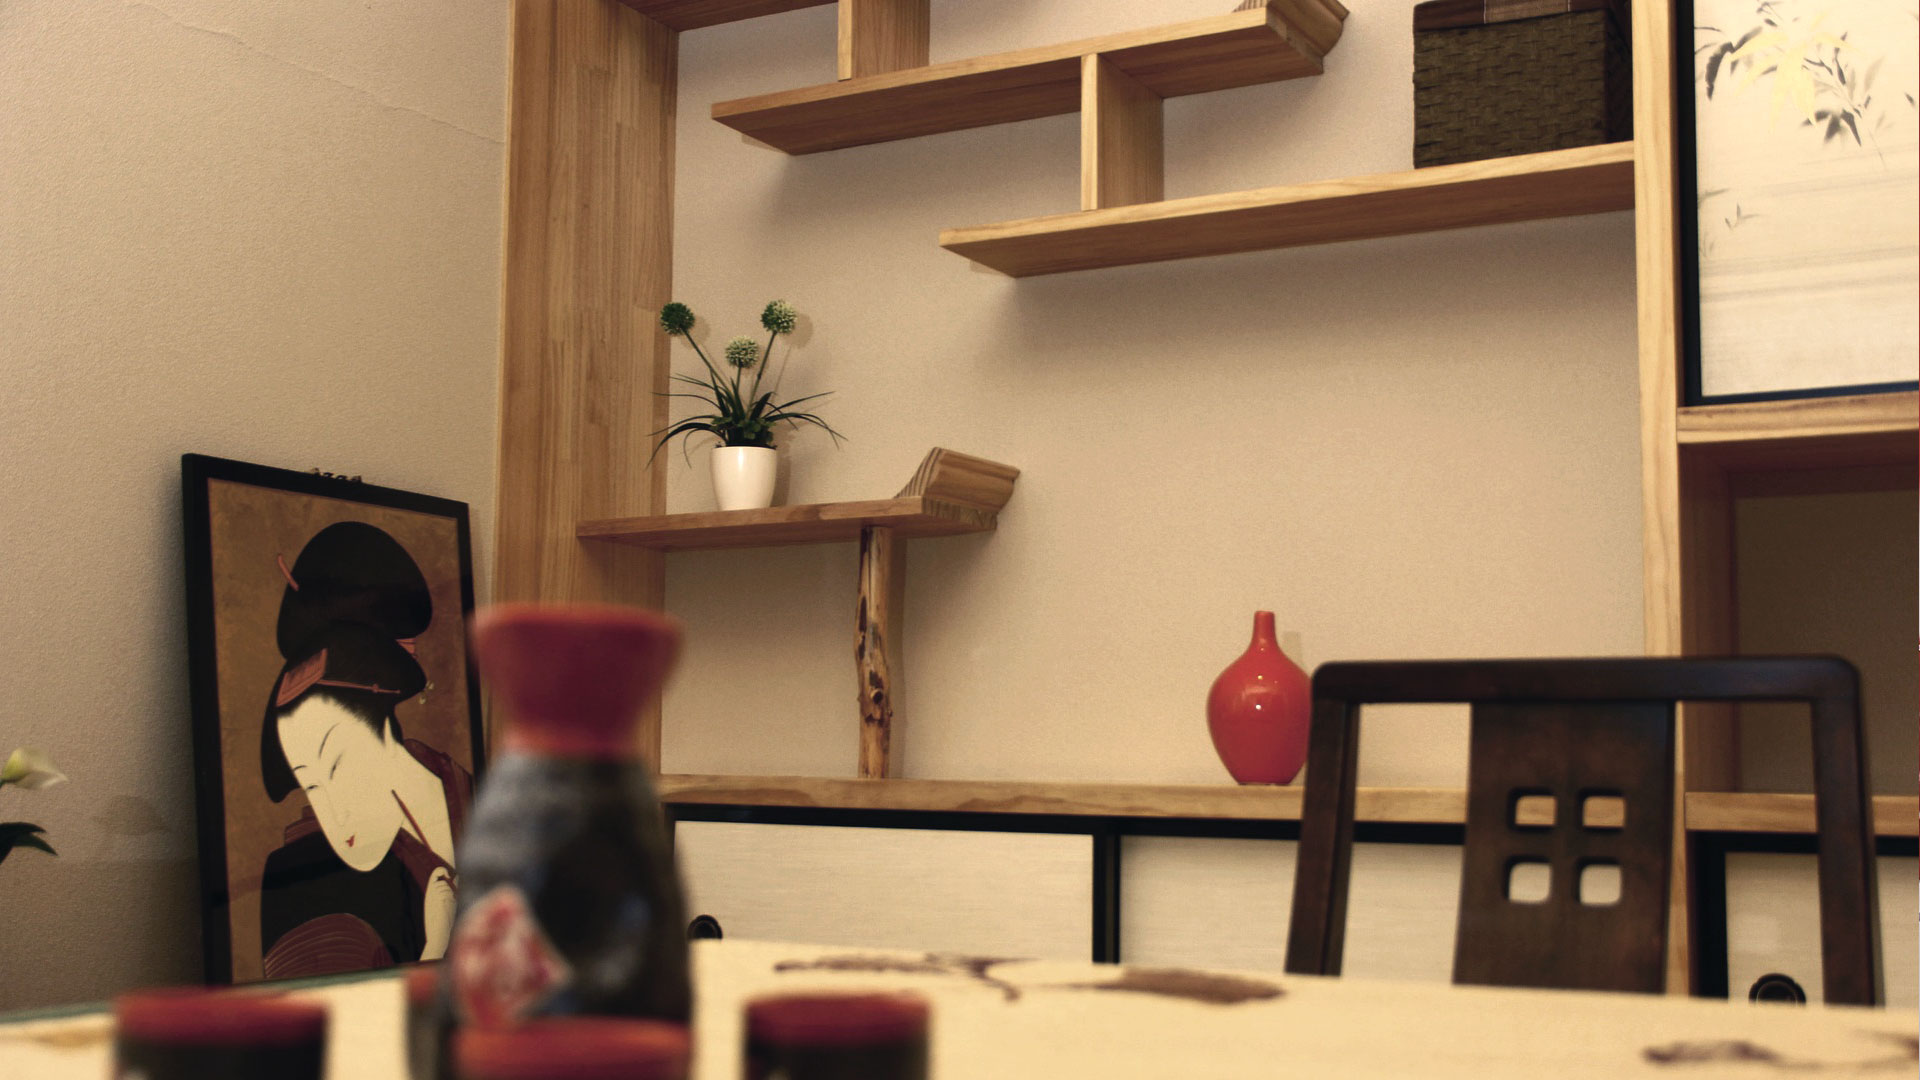 La reinterpretación minimalista del mobiliario zen japonés.